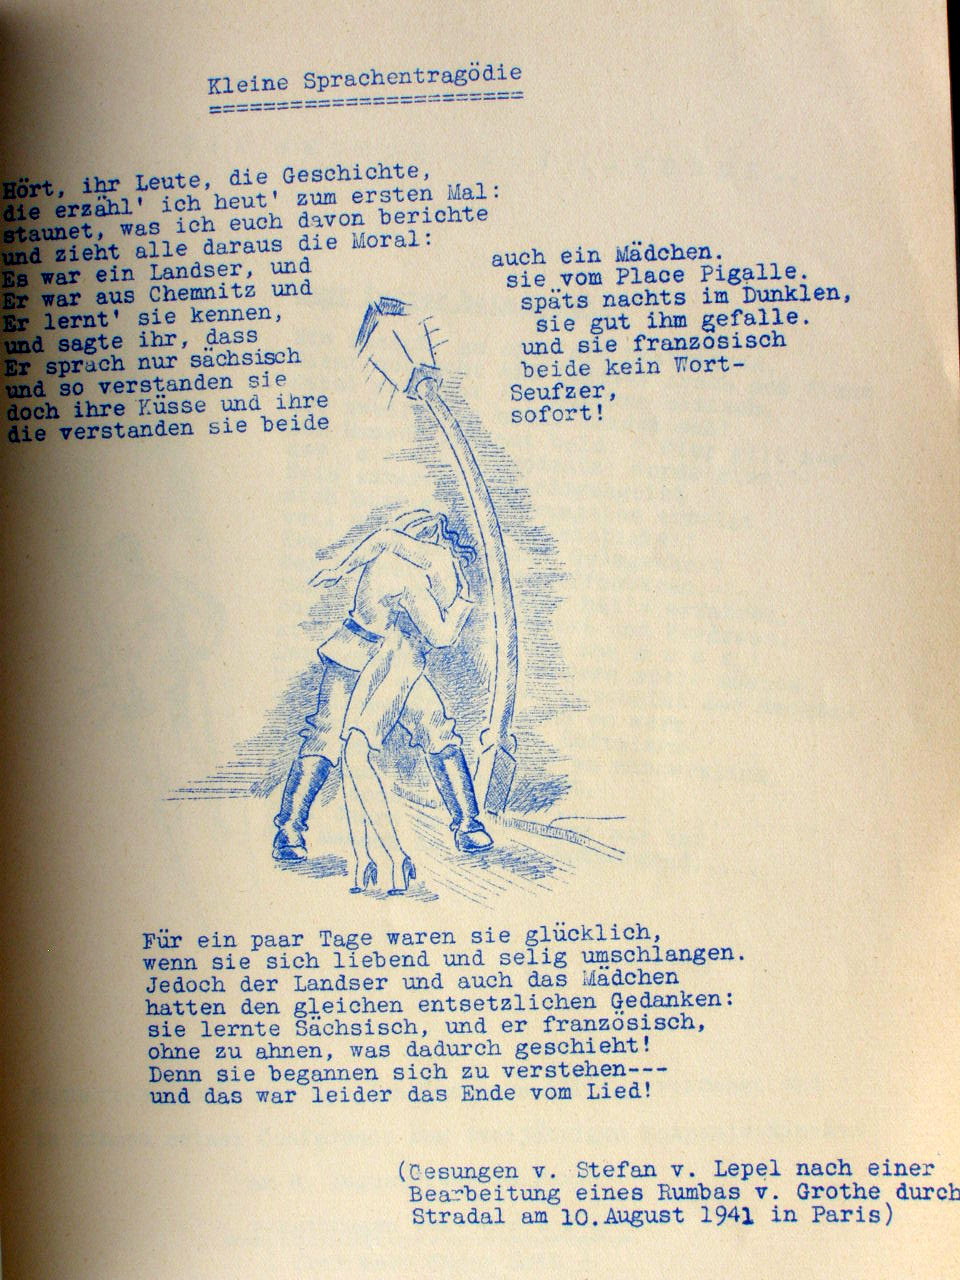 "Achtung Muse von links" Frontzeitung FP Nr. 36065, 1942